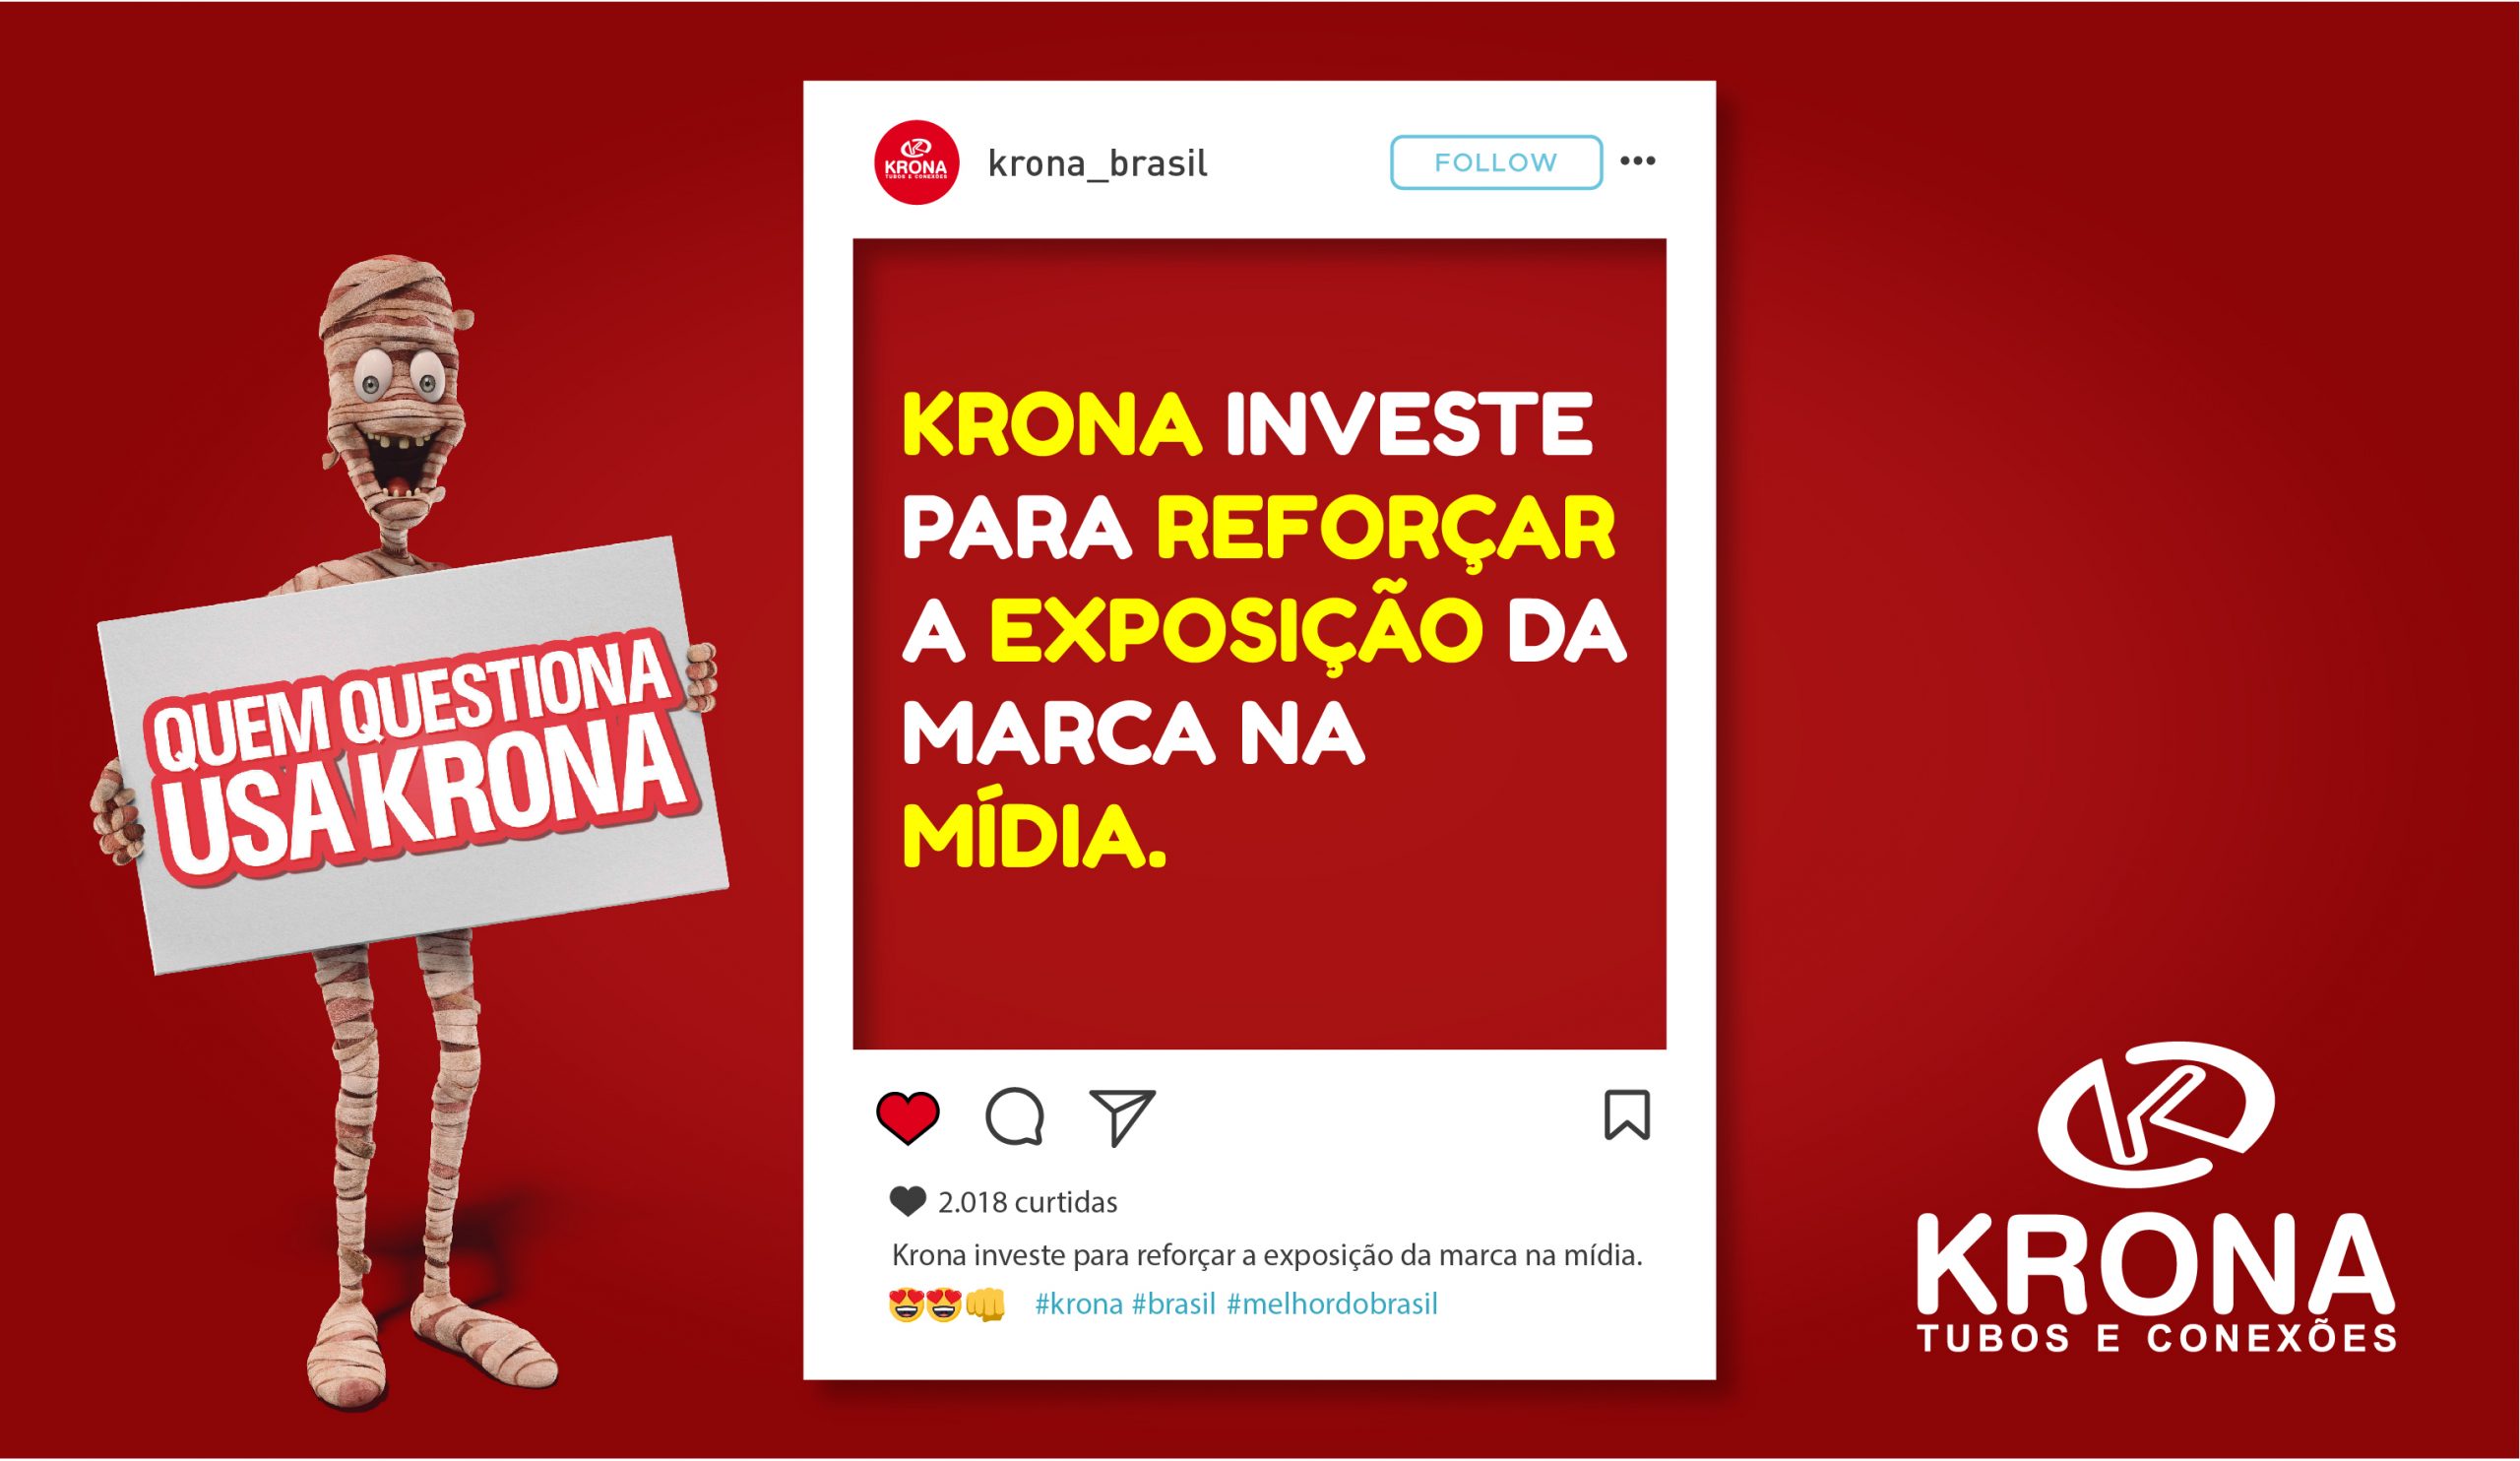 Krona investe para reforçar a exposição da marca na mídia.